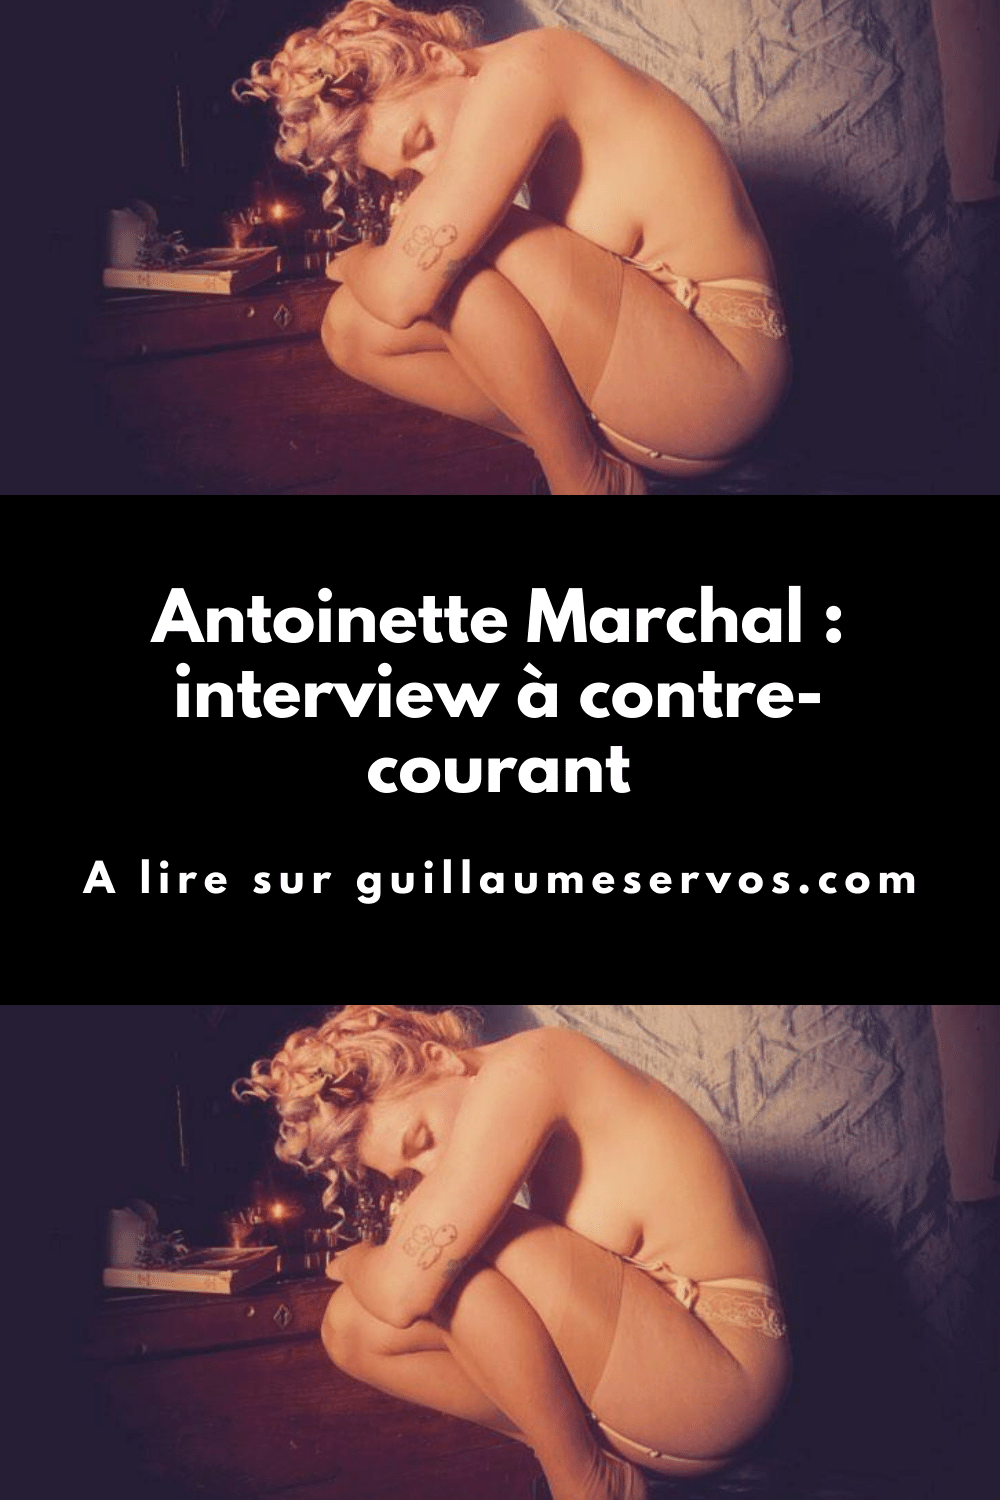 Découvre mon interview avec Antoinette Marchal, danseuse de French Cancan et modèle photo. Son rapport à la photographie, aux réseaux sociaux et au voyage.